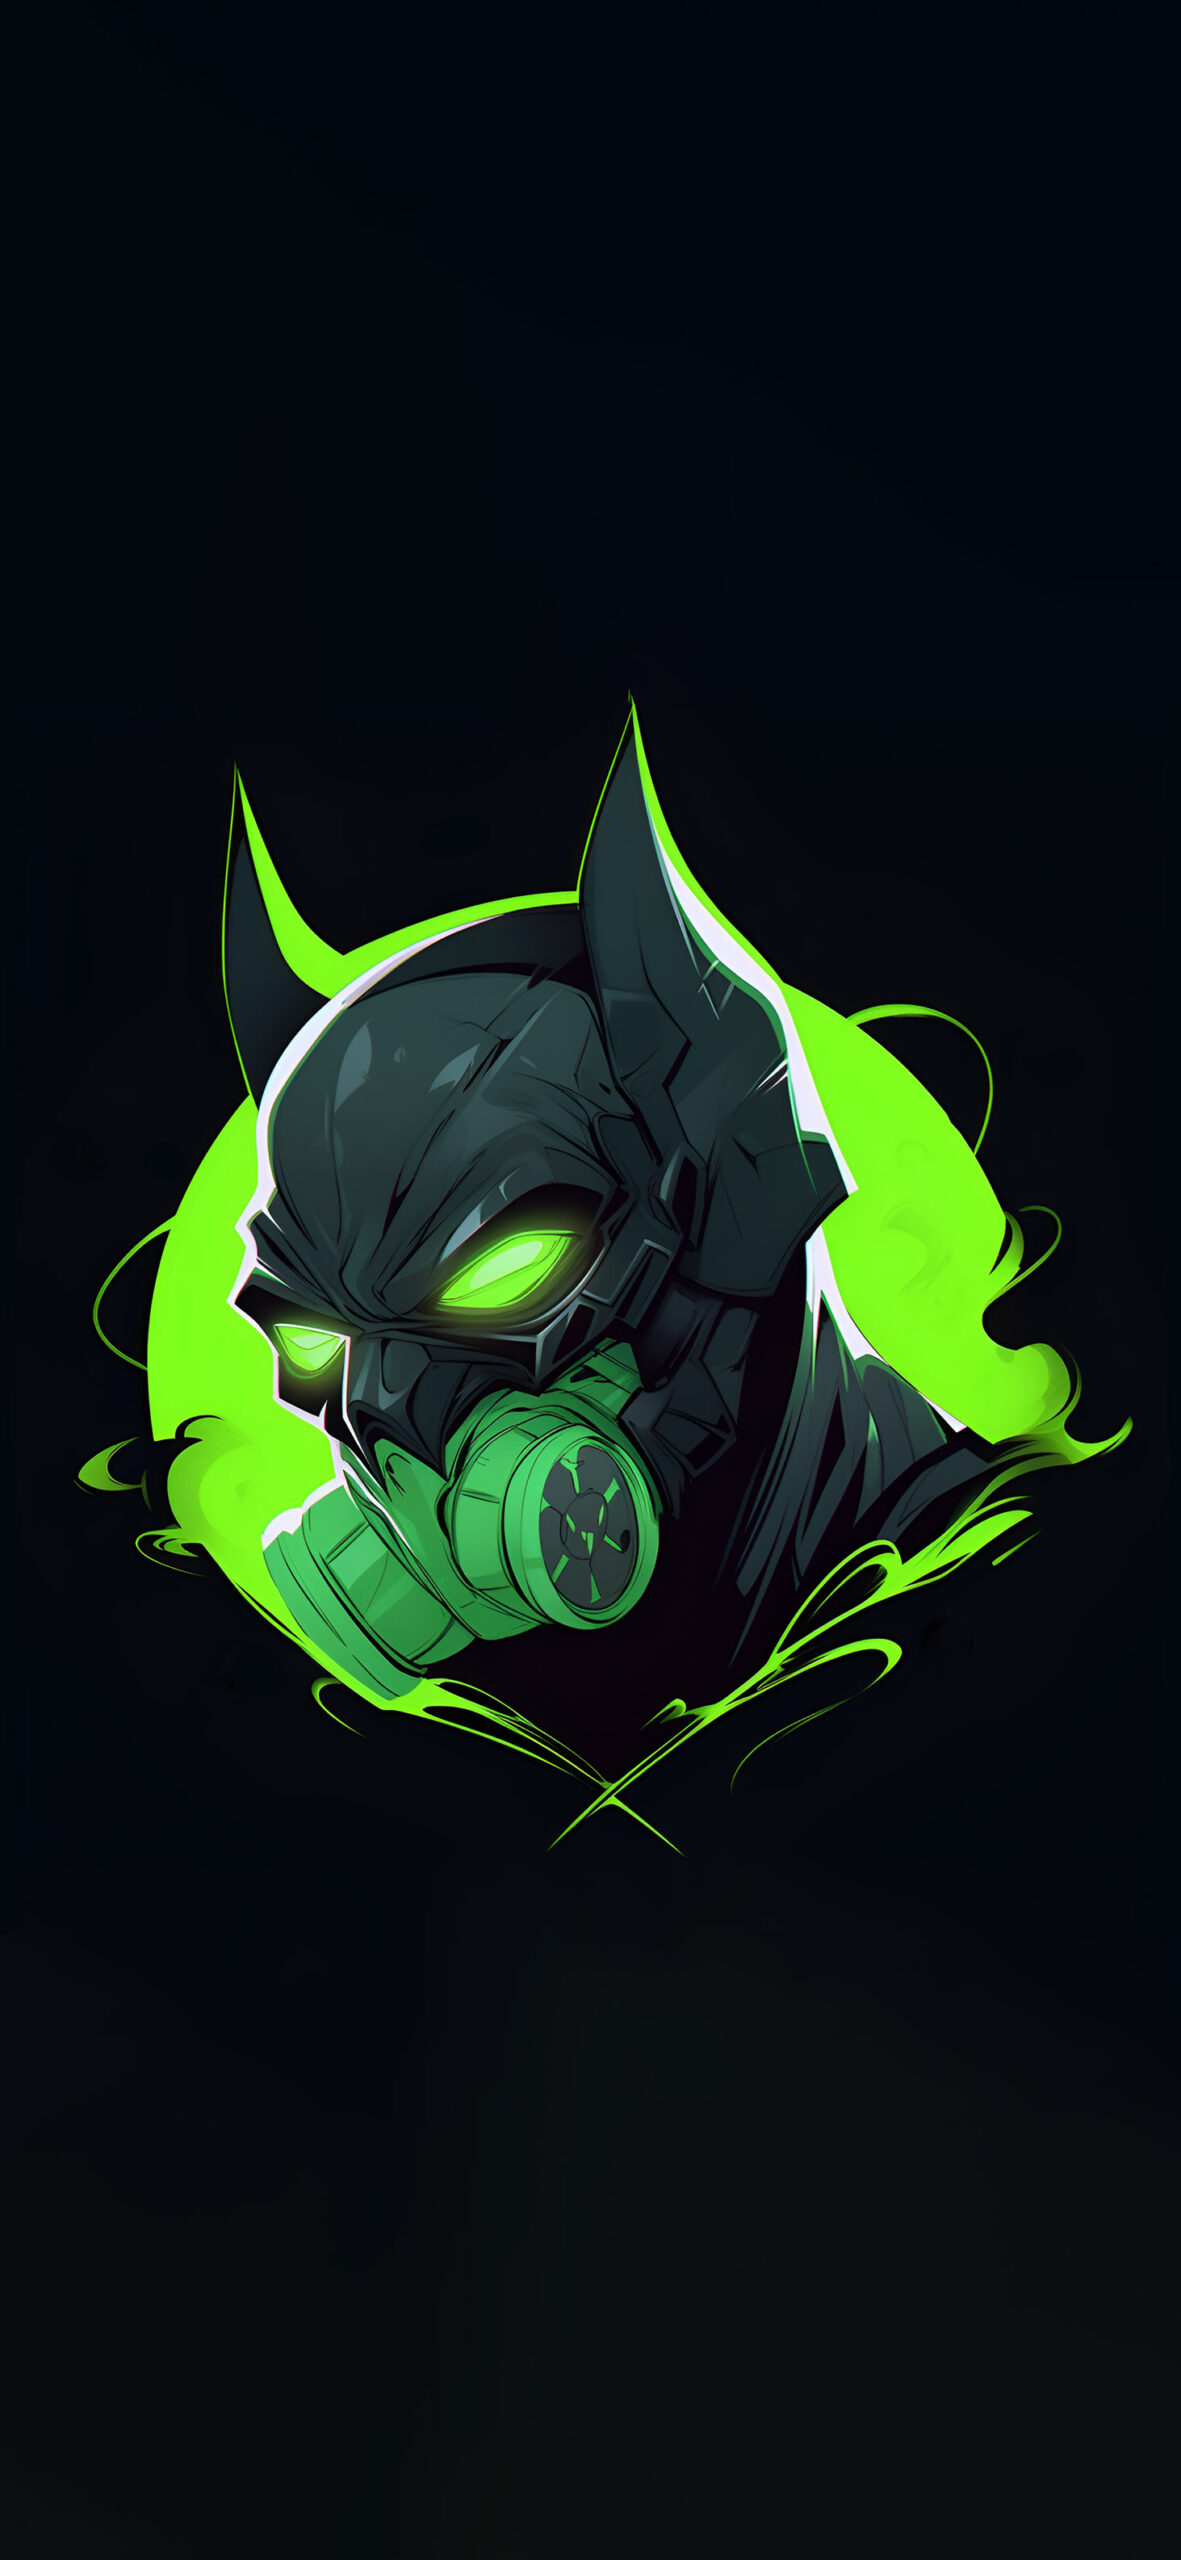 Toxic batman on black background wallpaper DC black art wallpa